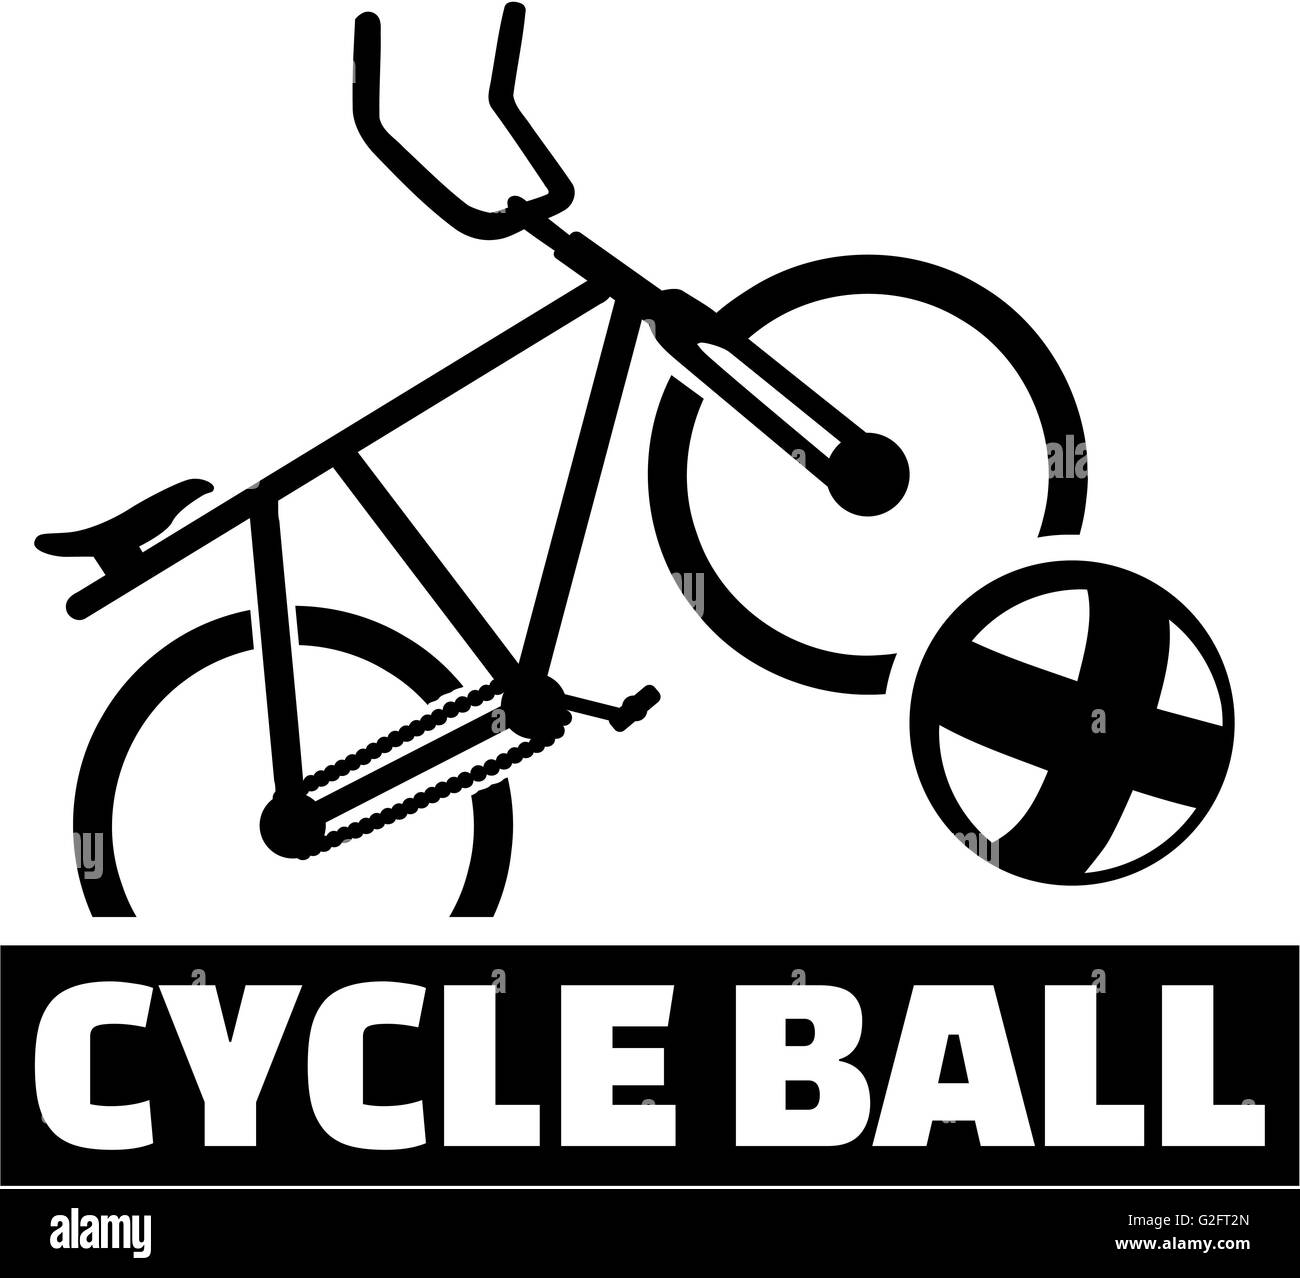 de ciclo bike ball y nombre Fotografía de - Alamy